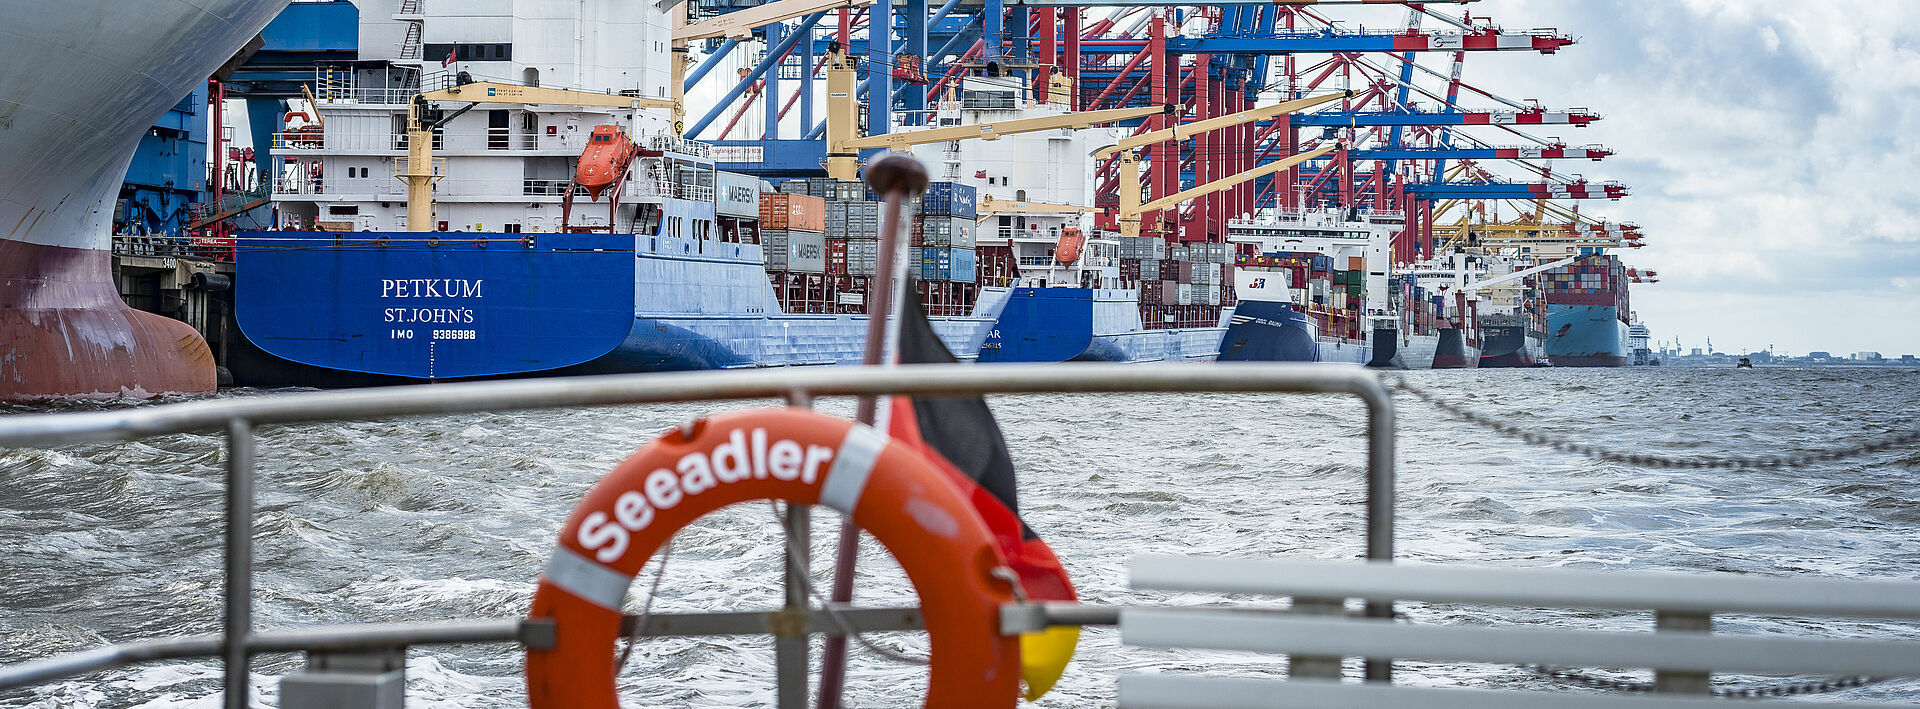 Blick auf Containerterminal von Bord der Seeadler, im Vordergrund der Rettungsring der Seeadler